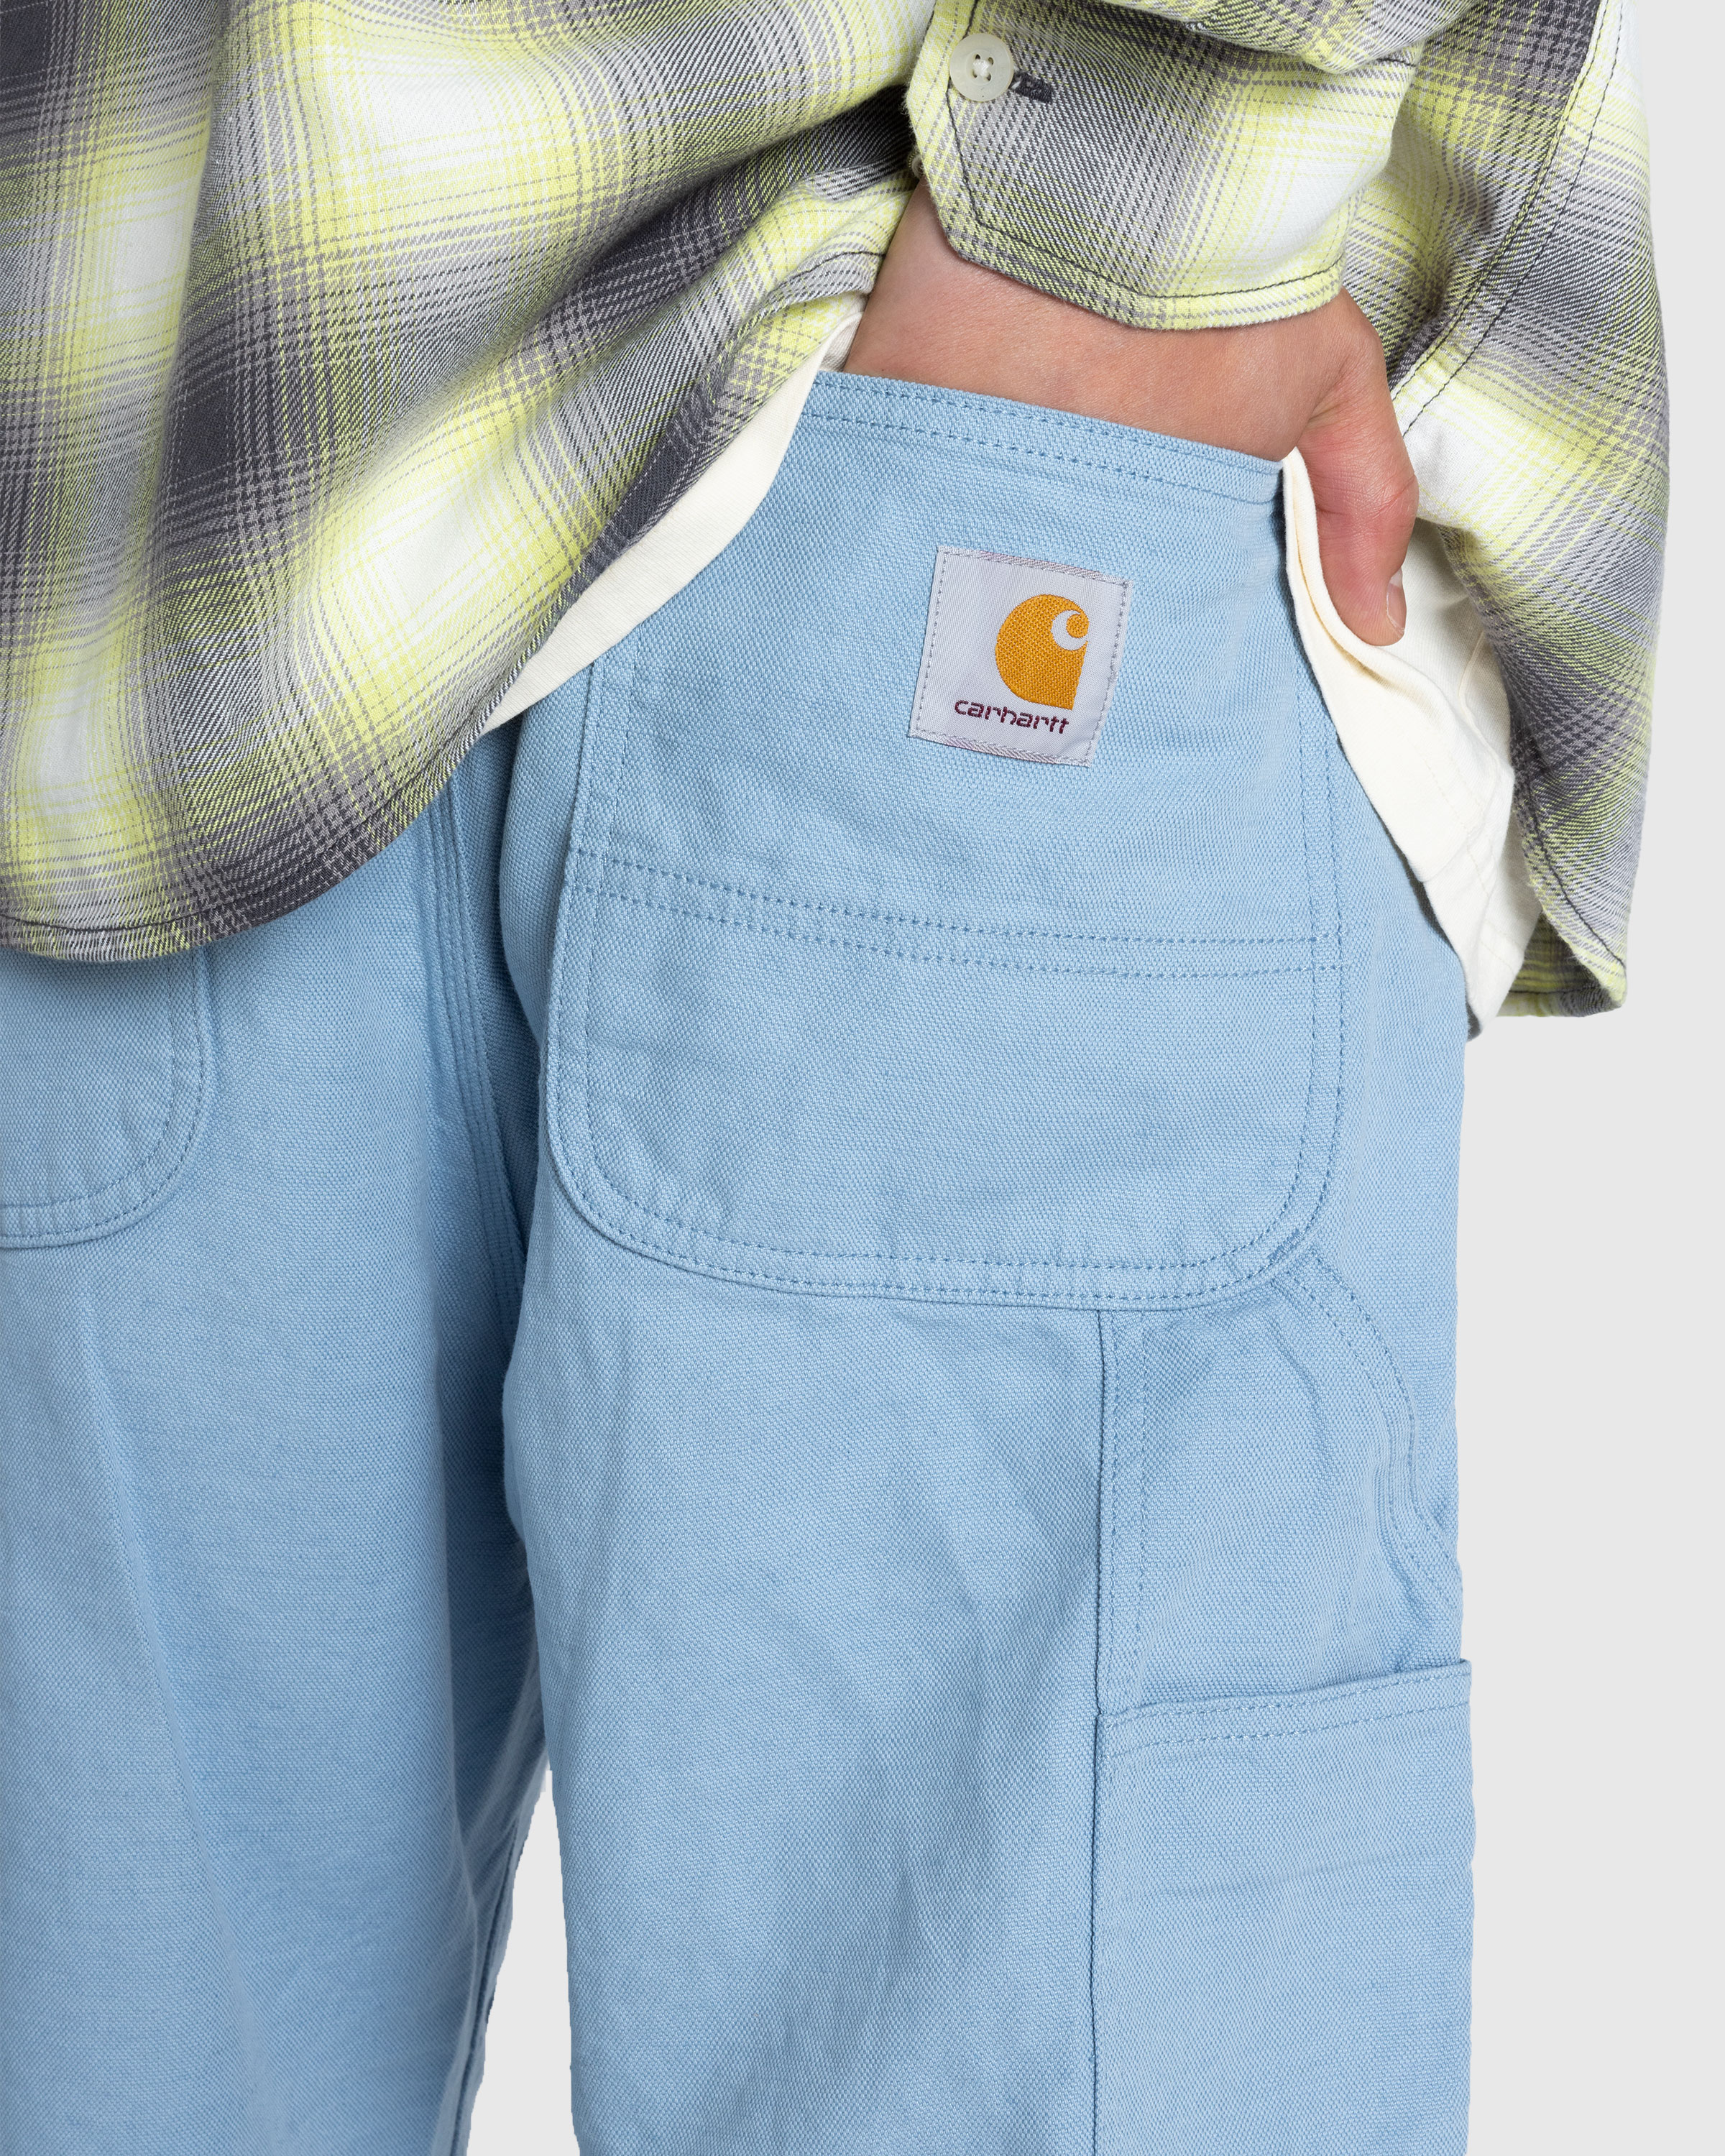 Carhartt WIP – Walter Double Knee Pant Misty Sky/Rinsed - Work Pants - Blue - Image 5